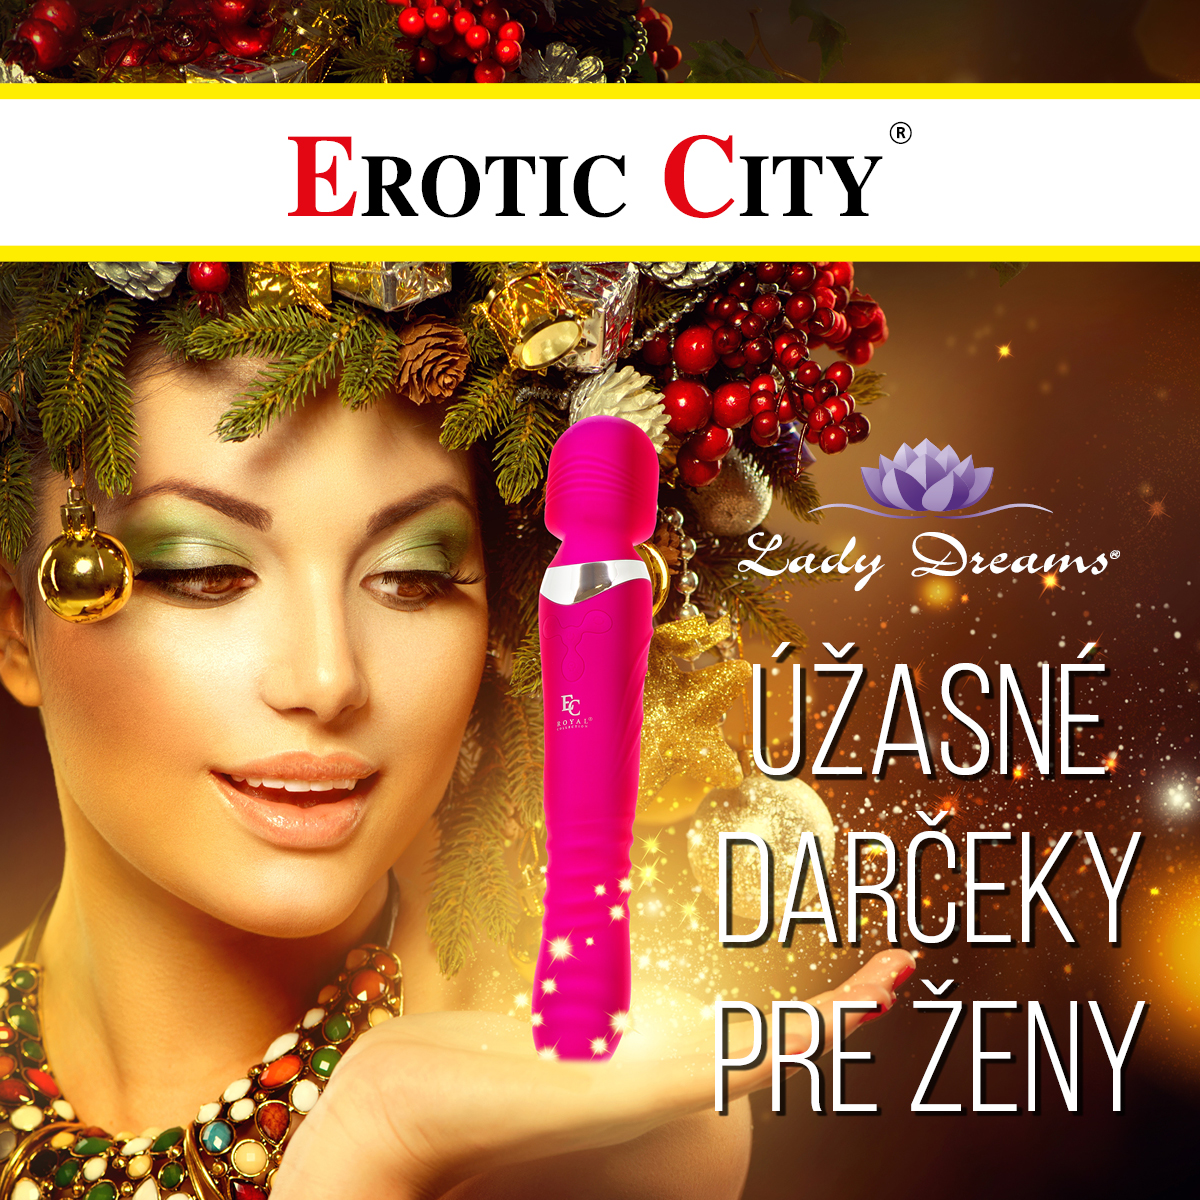 Erotic City